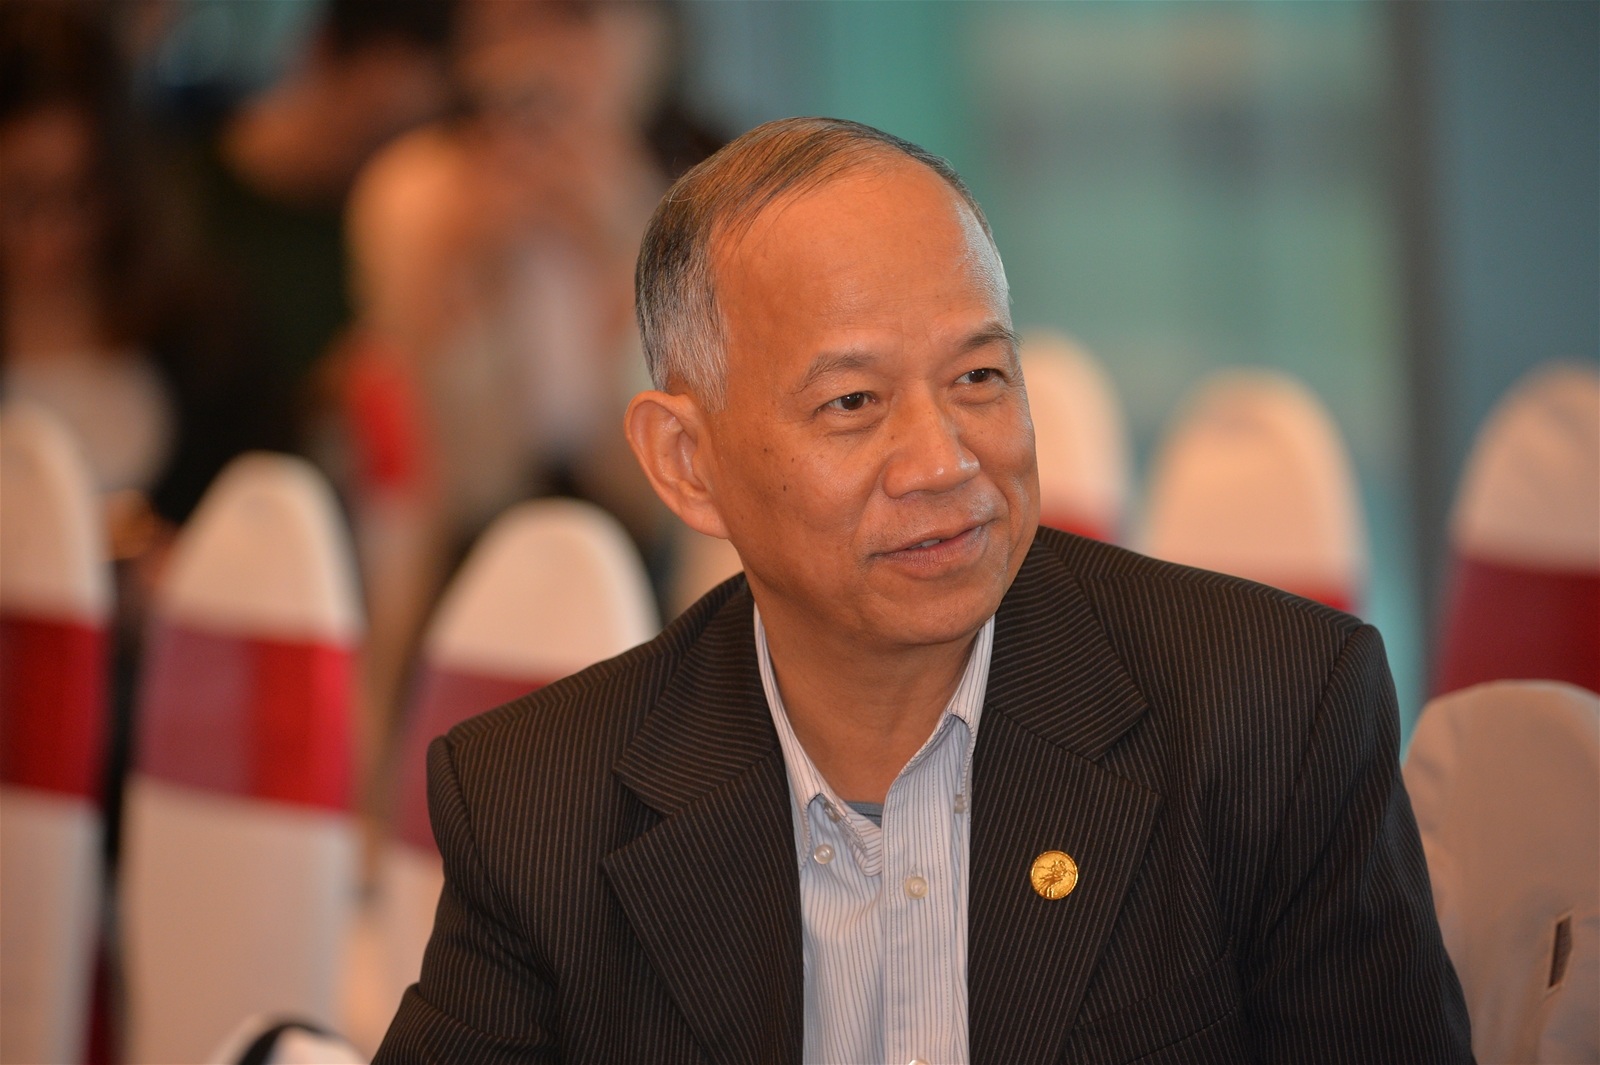 TS. Nguyễn Minh Phong